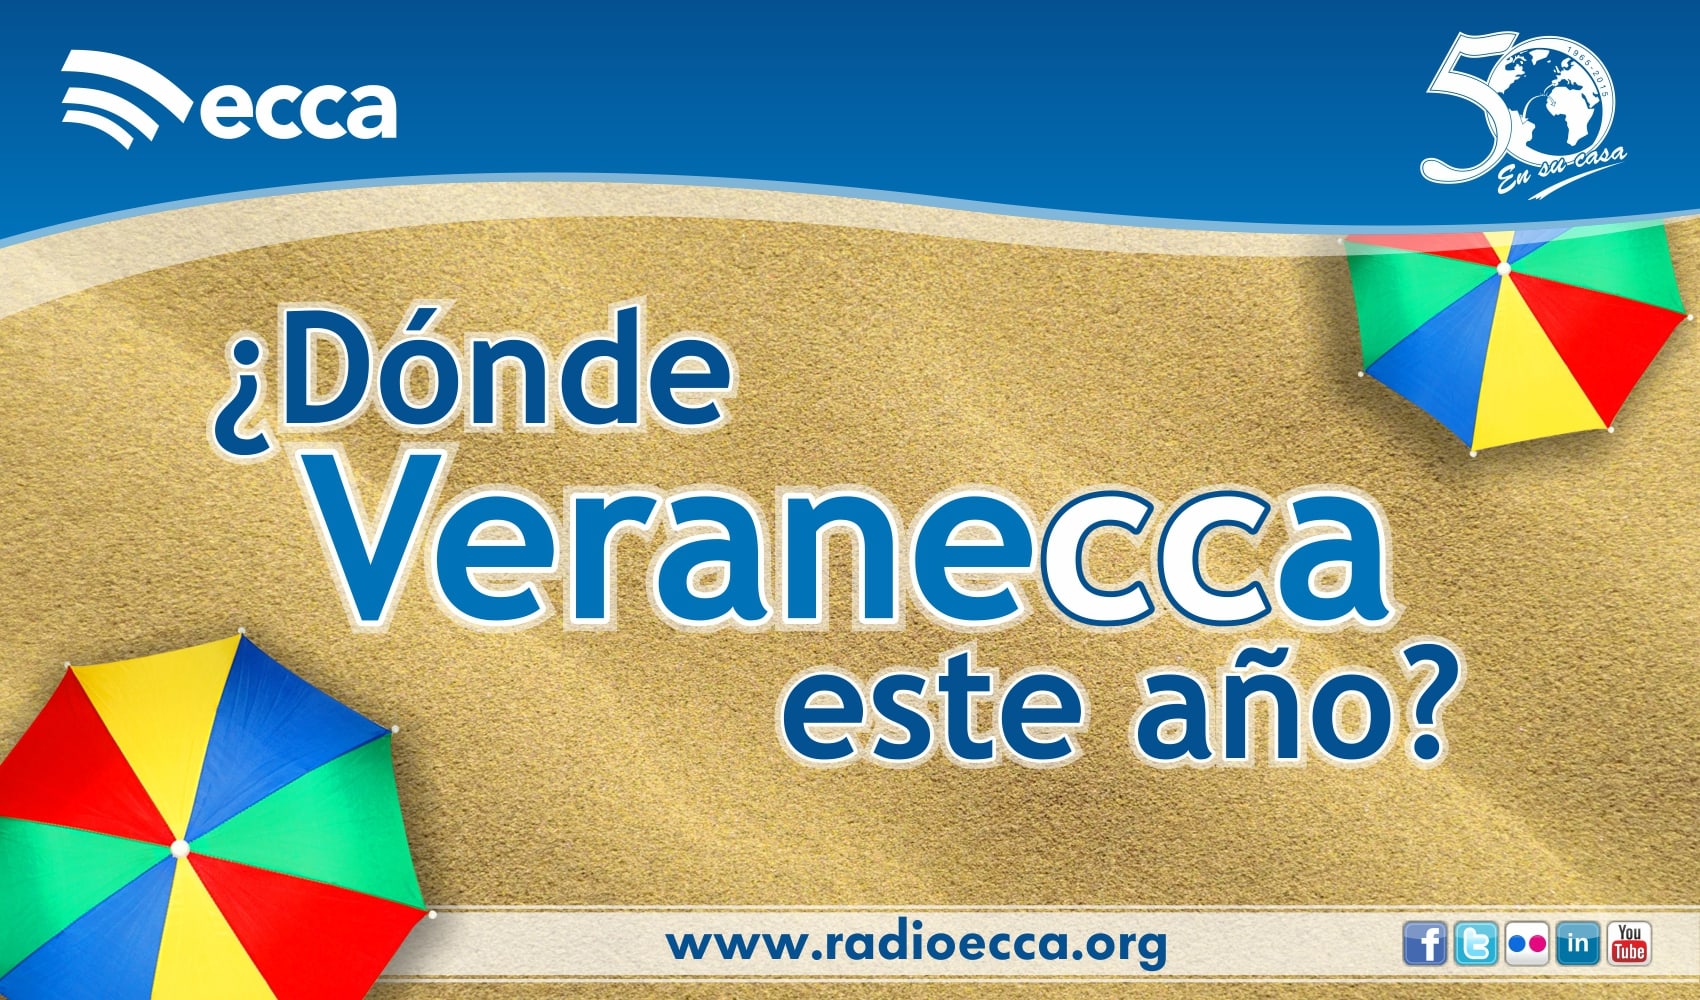 Radio ECCA lanza su campaña de verano con el lema ‘¿Dónde Veranecca este año?’